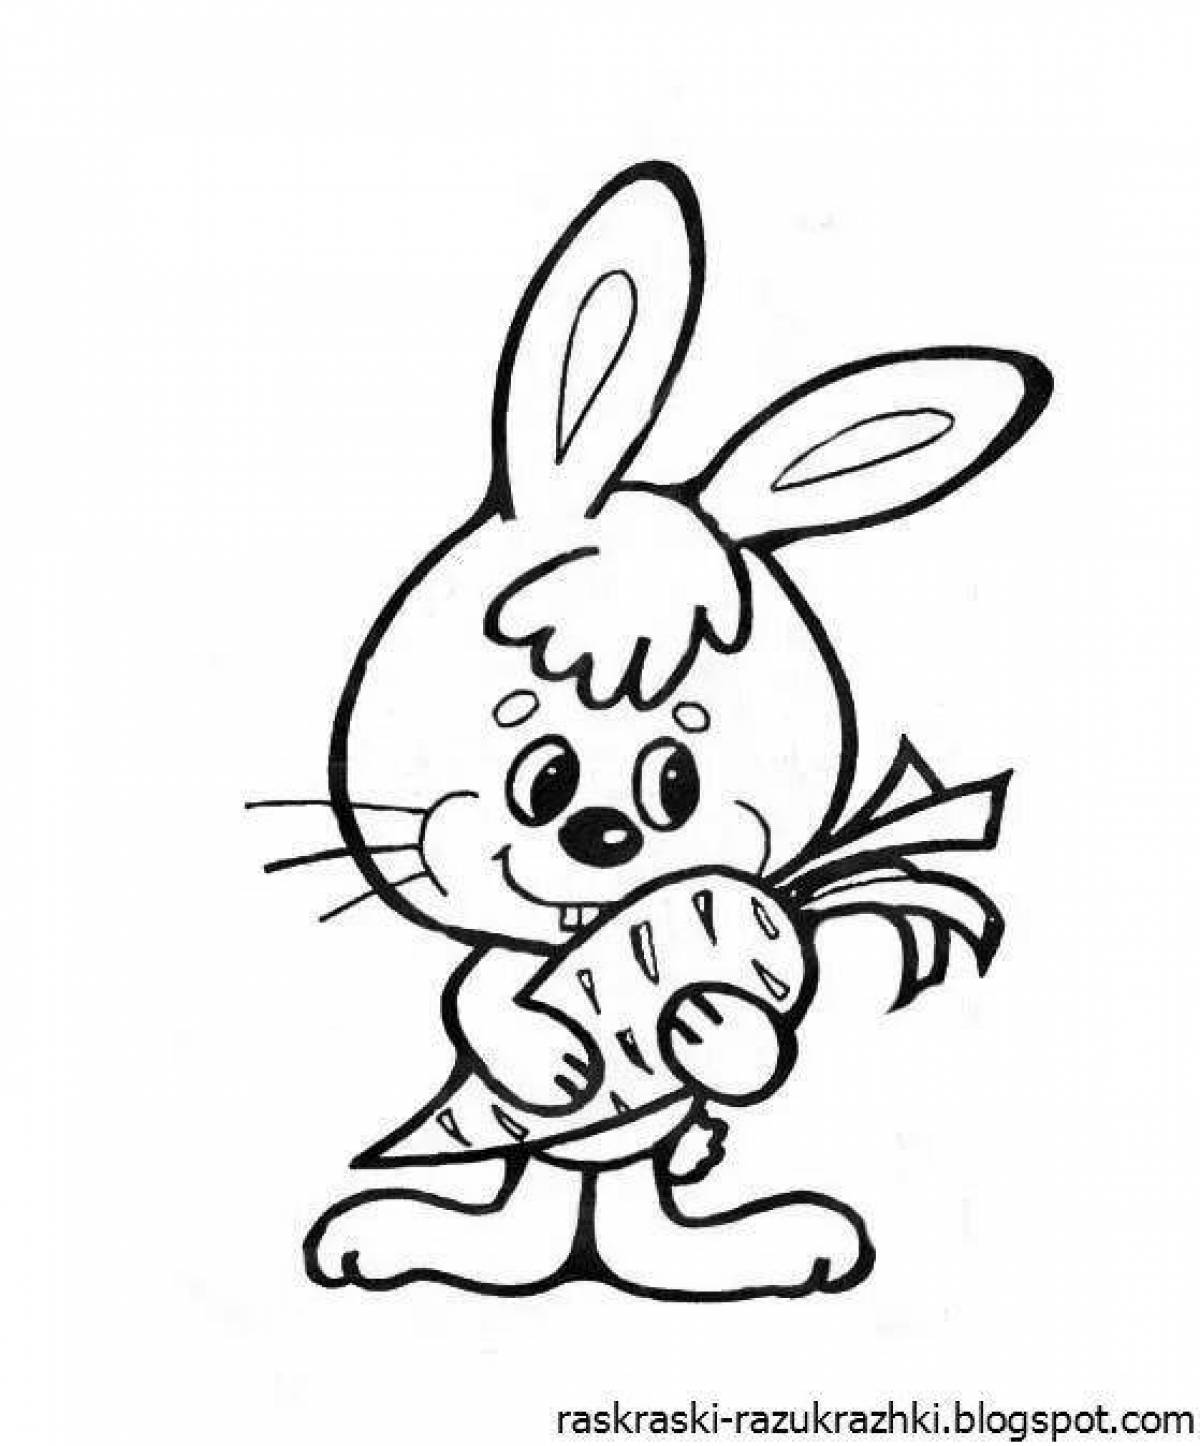 Увлекательная раскраска «рисунок зайца» для детей